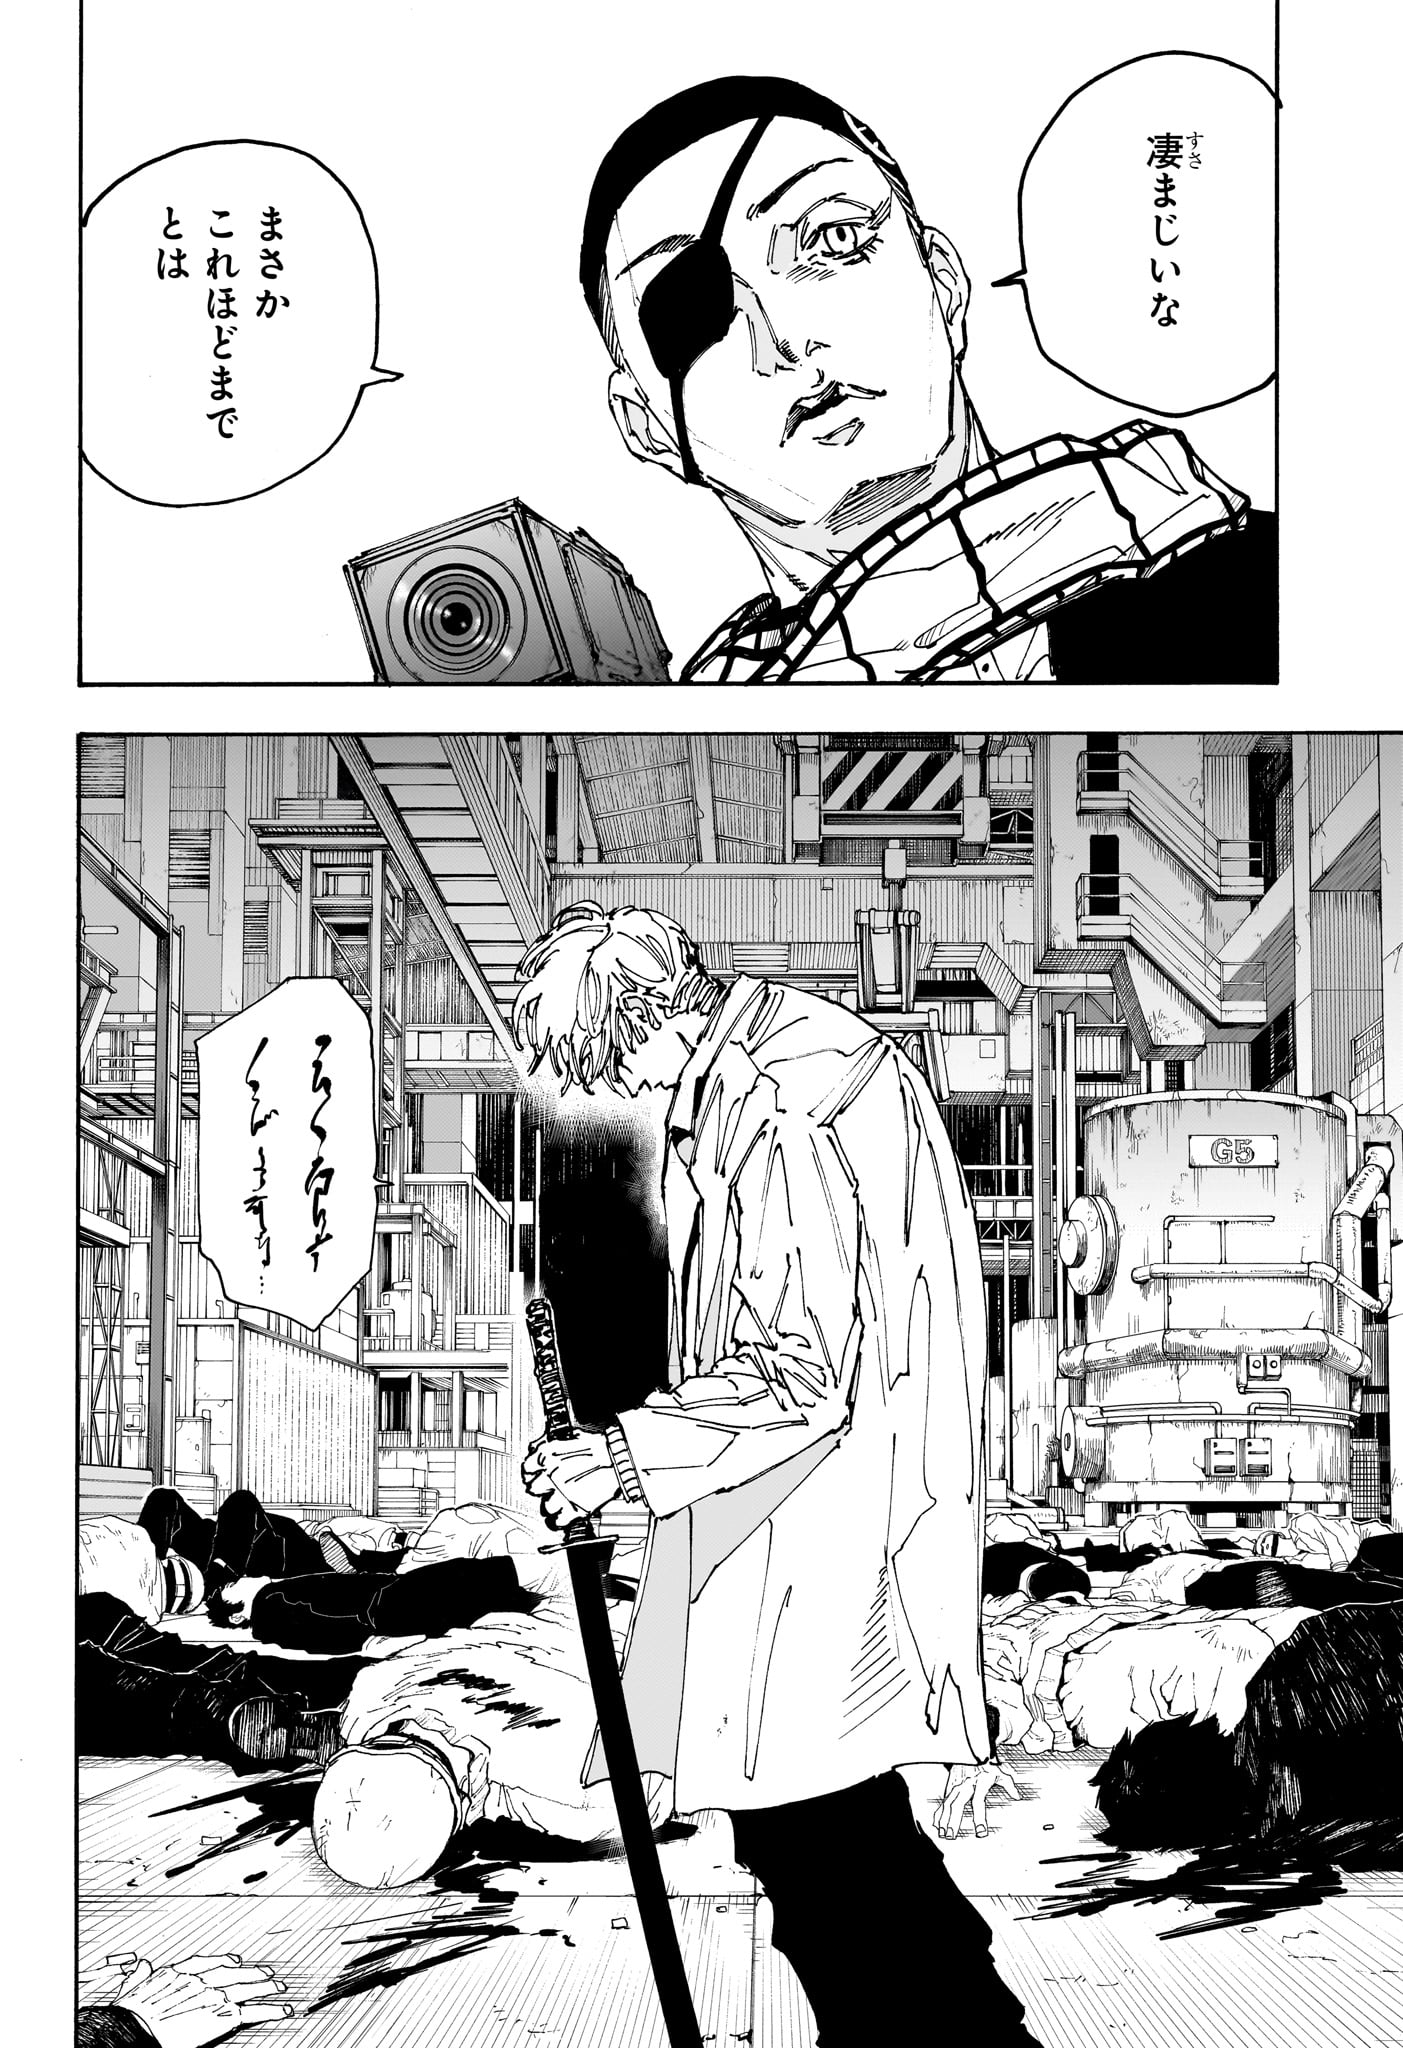 Sakamoto Days - Chapter 172 - Page 2